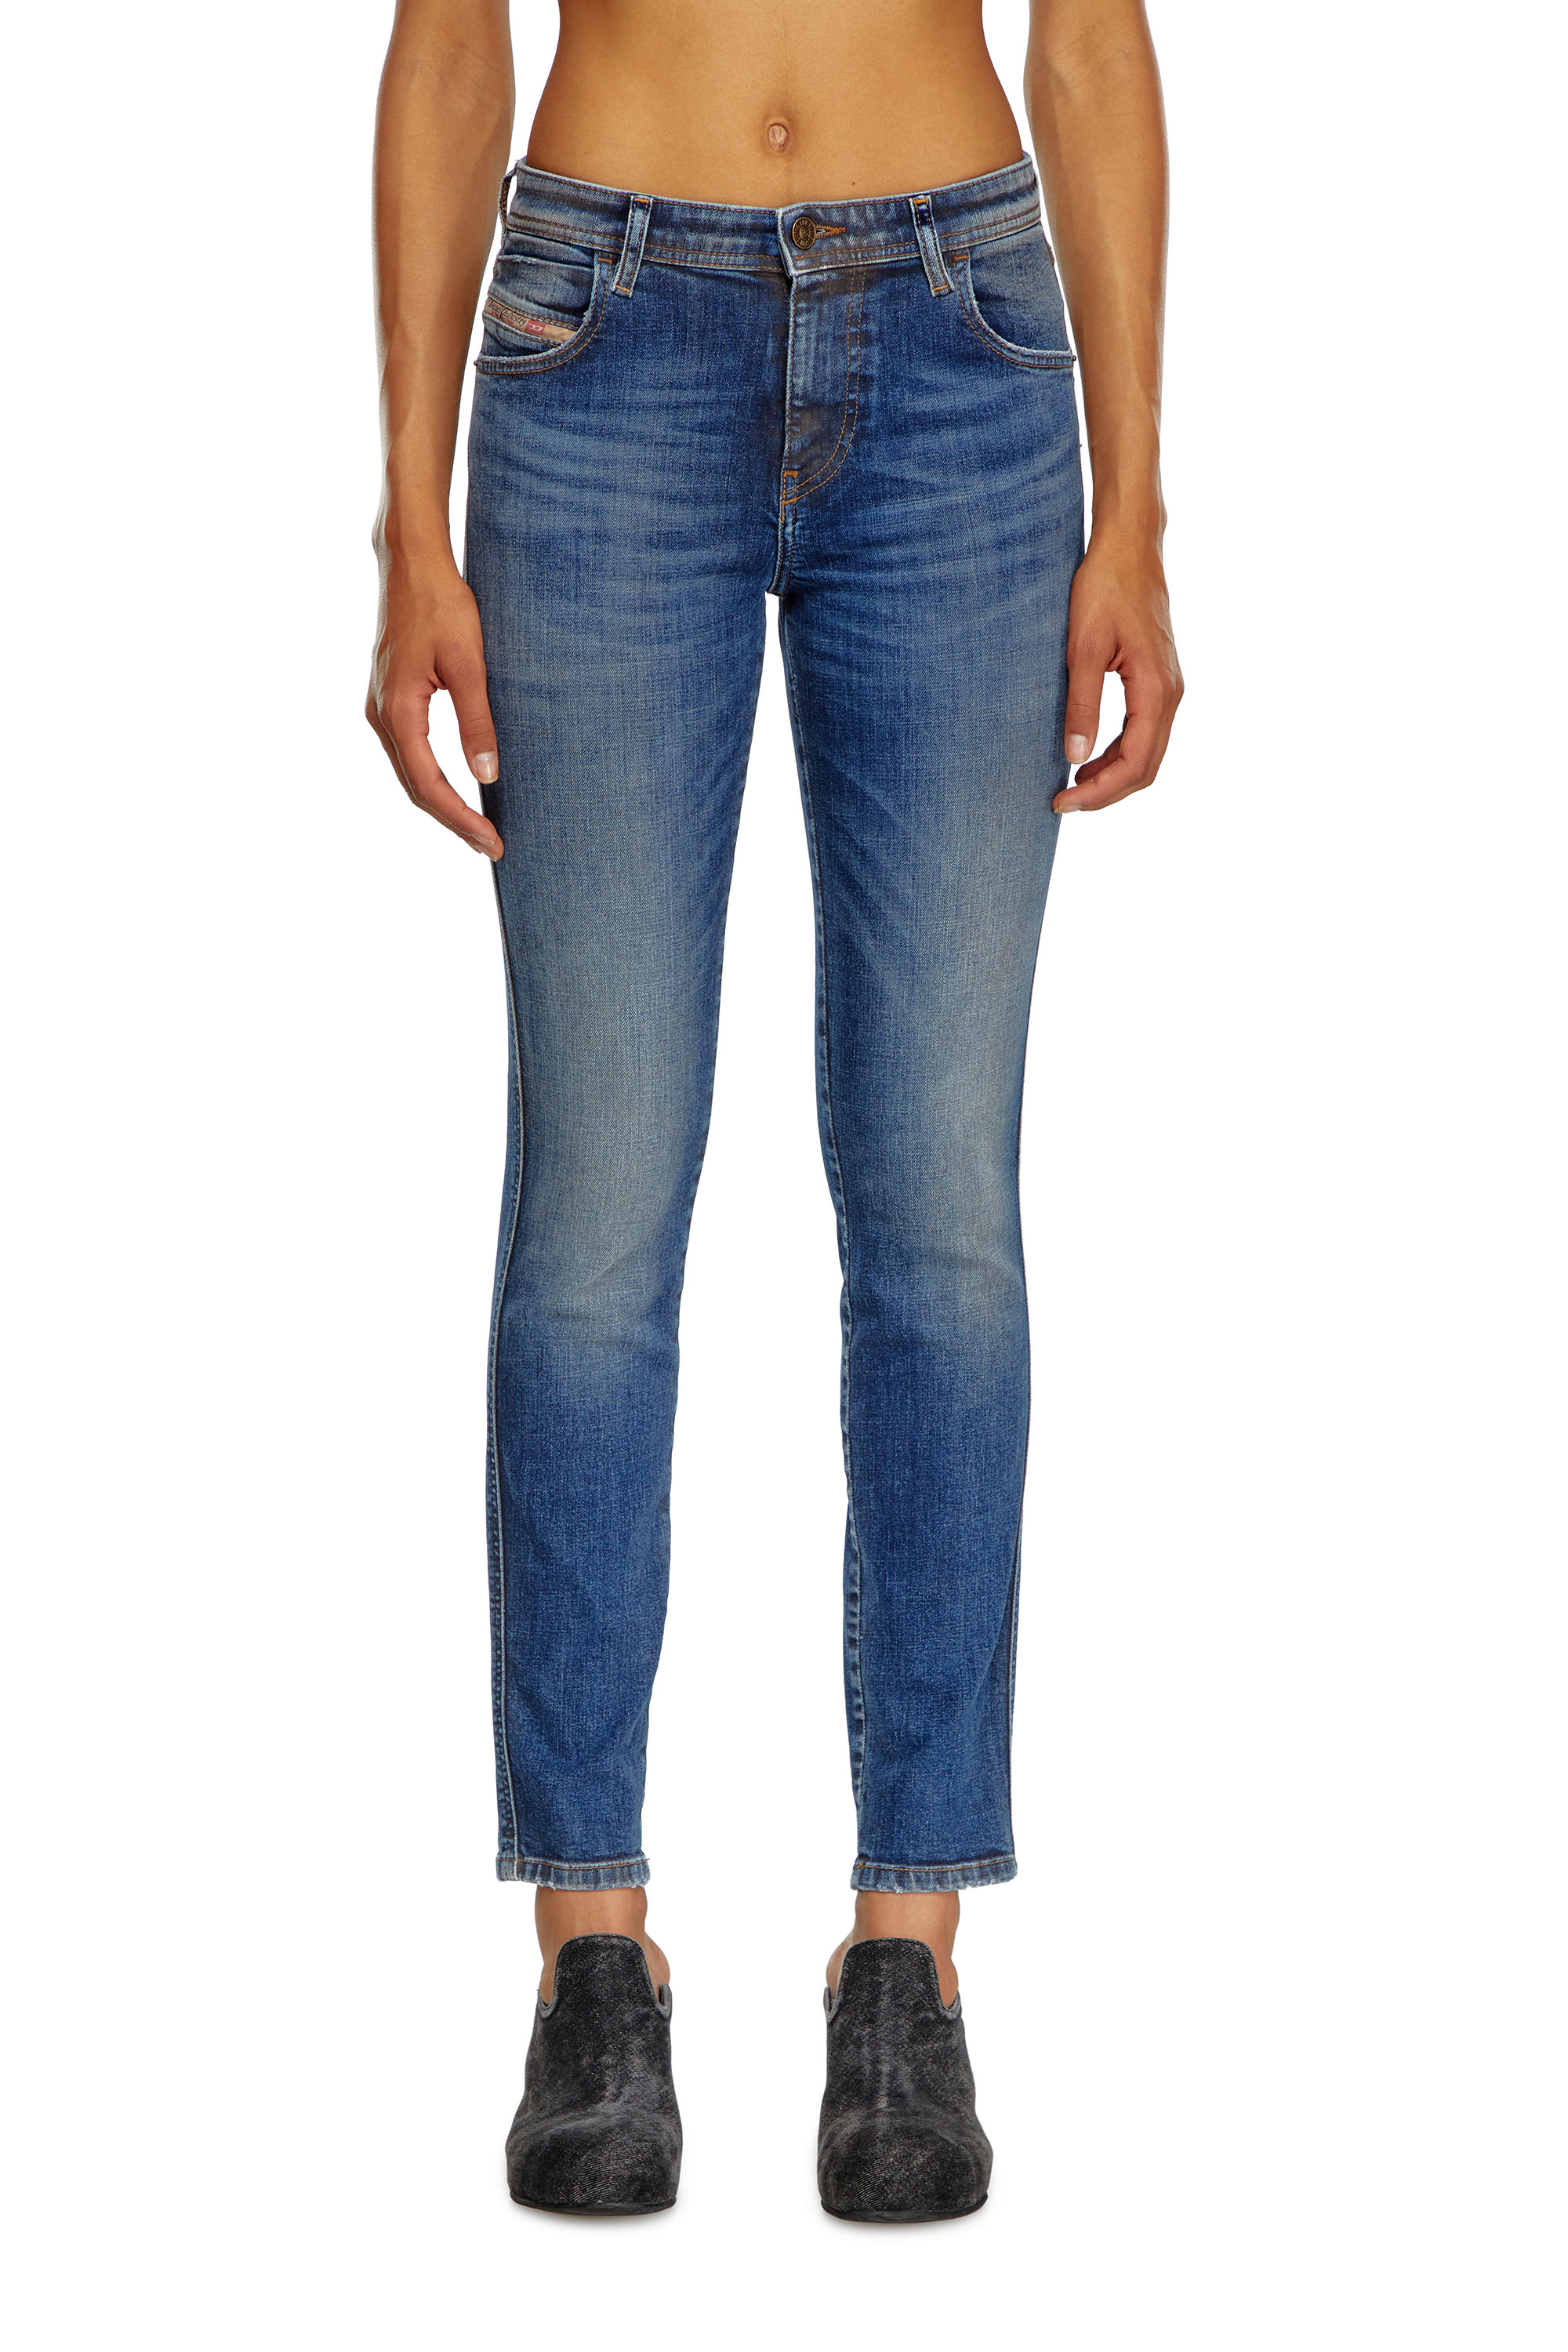 Diesel - Skinny Jeans 2015 Babhila 09J32, Mujer Skinny Jeans - 2015 Babhila in Azul marino - Image 1